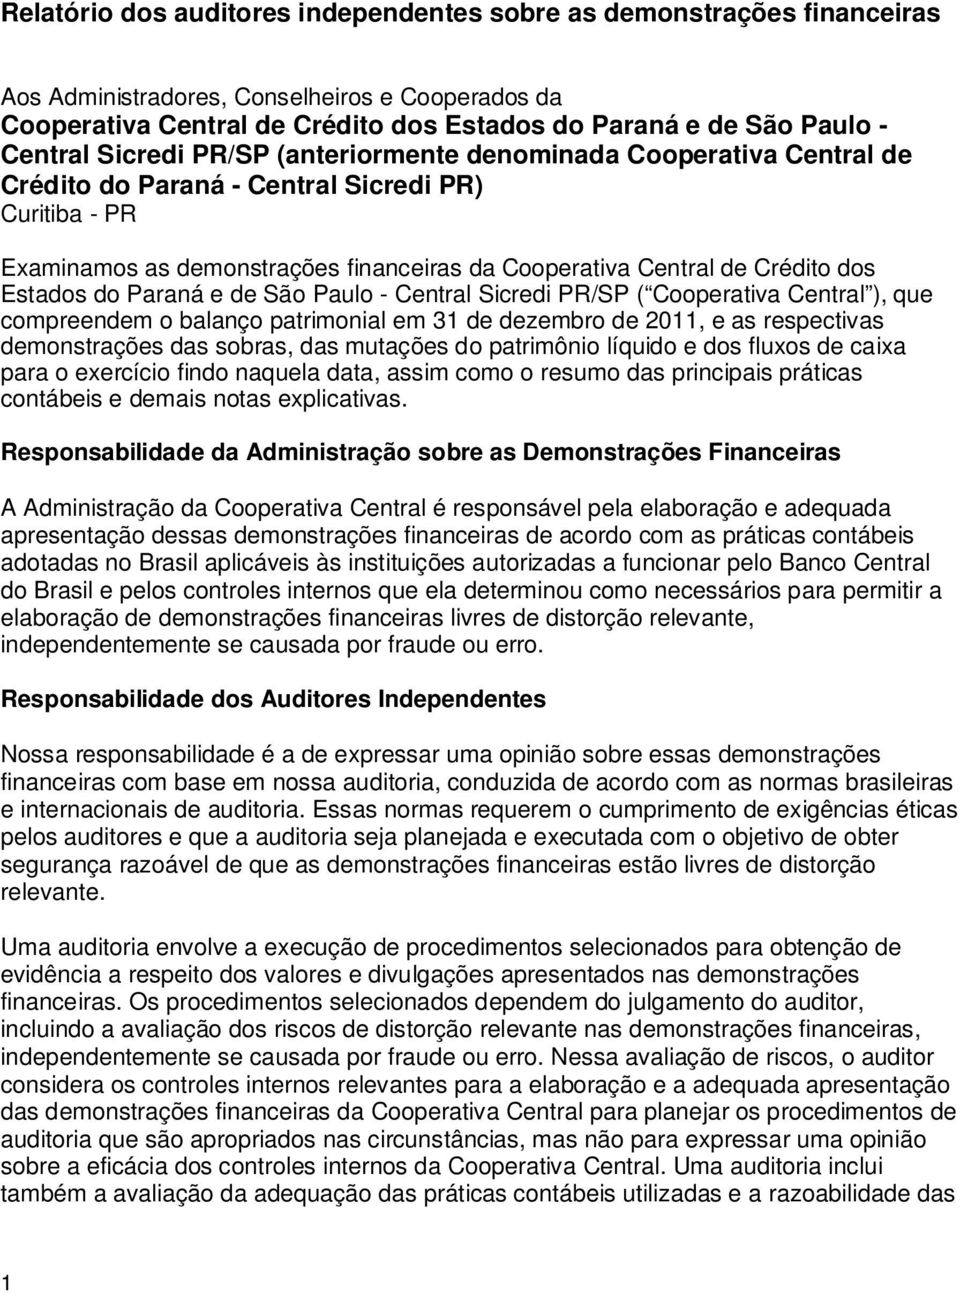 dos Estados do Paraná e de São Paulo ( Cooperativa Central ), que compreendem o balanço patrimonial em 31 de dezembro de 2011, e as respectivas demonstrações das sobras, das mutações do patrimônio